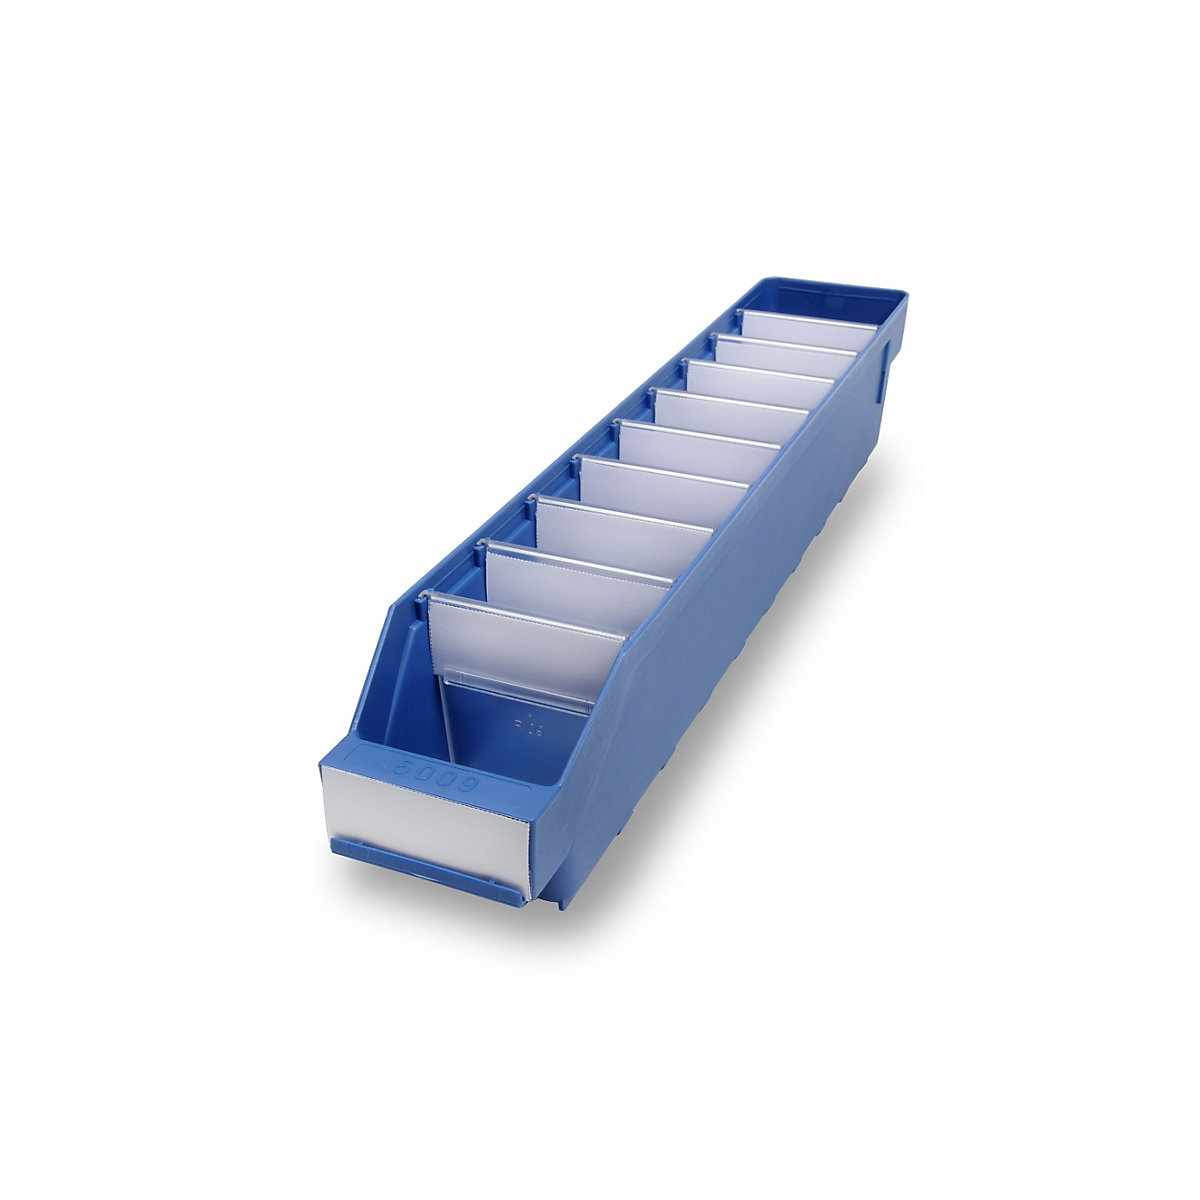 STEMO Regalkasten aus hochschlagfestem Polypropylen, blau, LxBxH 500 x 90 x 95 mm, VE 40 Stk